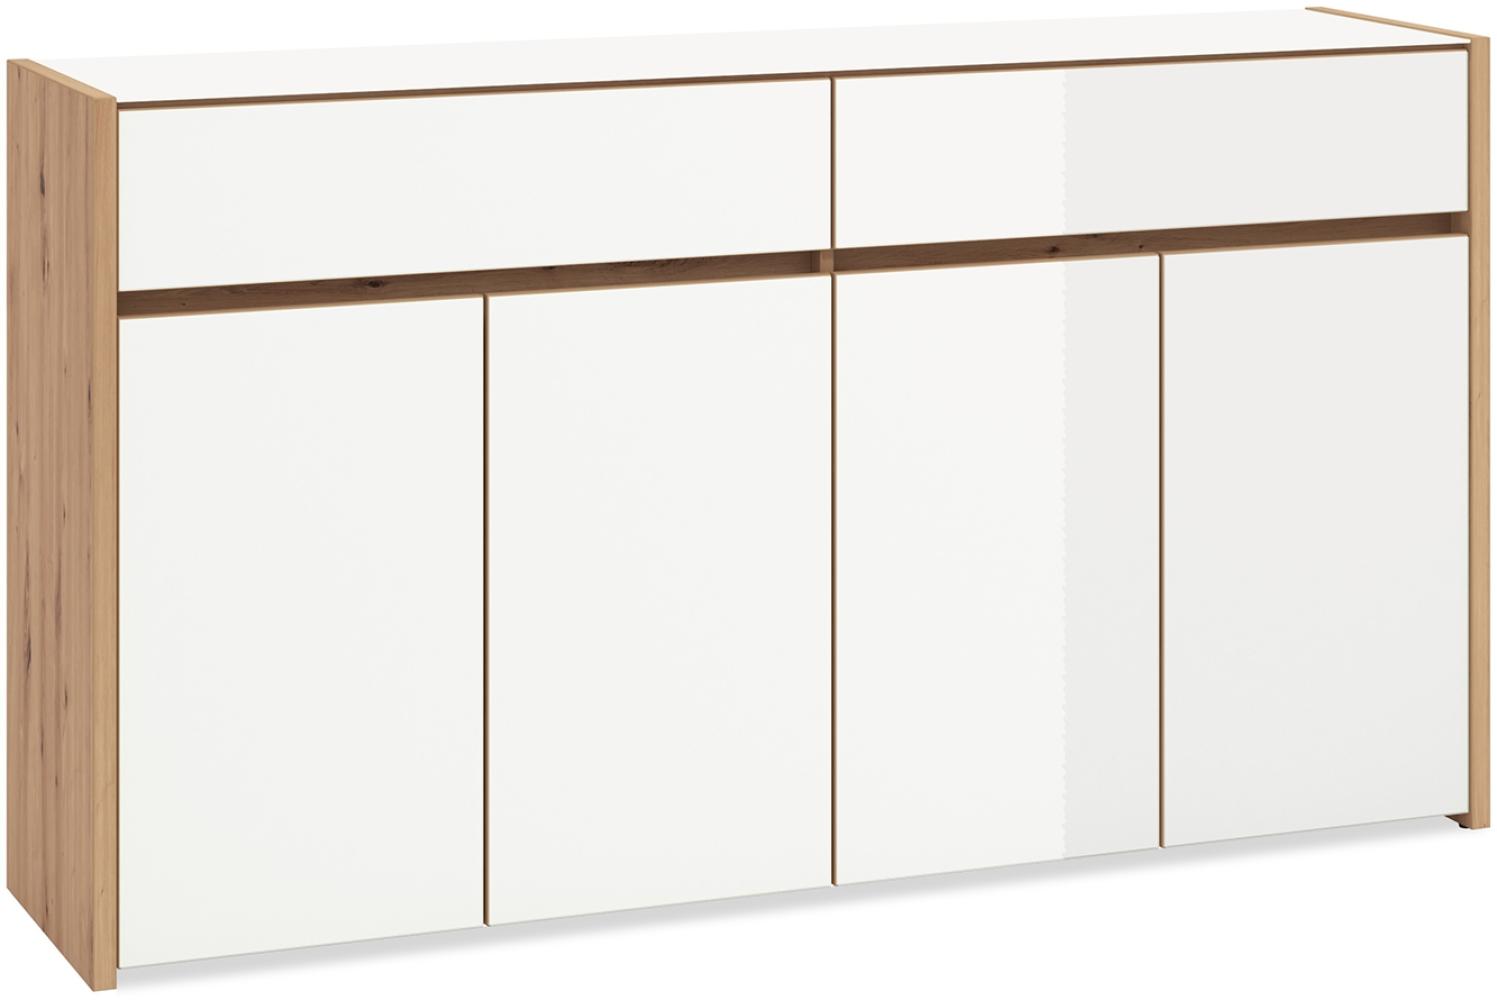 Homestyle4u Sideboard mit 2 Schubladen, Holz natur / weiß hochglanz, 165 x 91,5 x 40 cm Bild 1